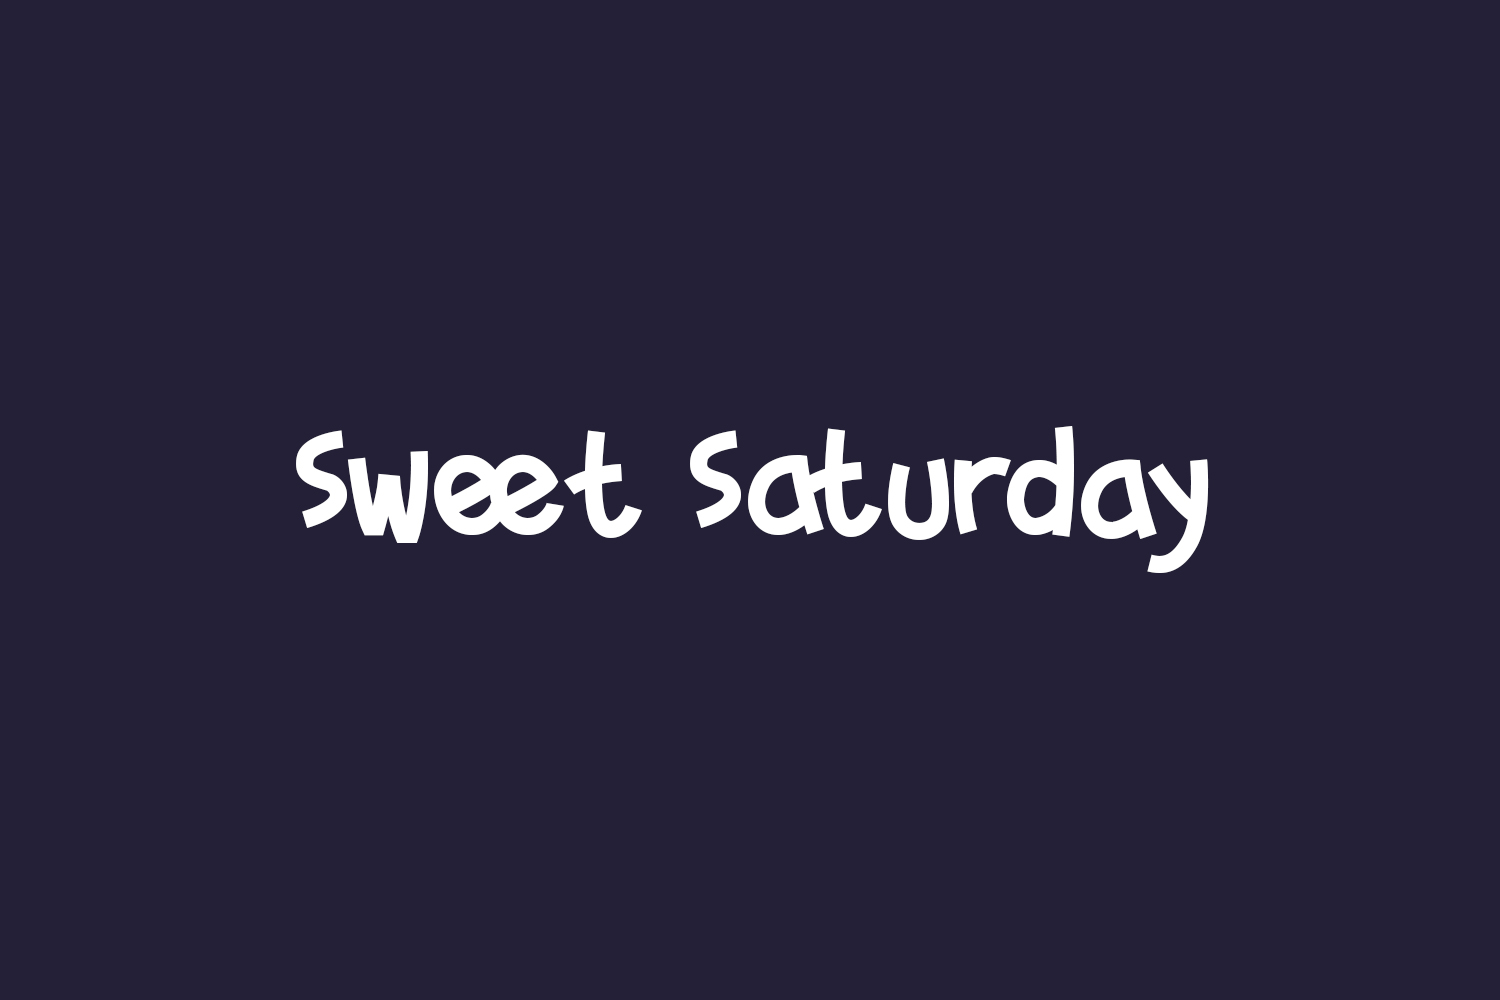 Sweet Saturday Free Font